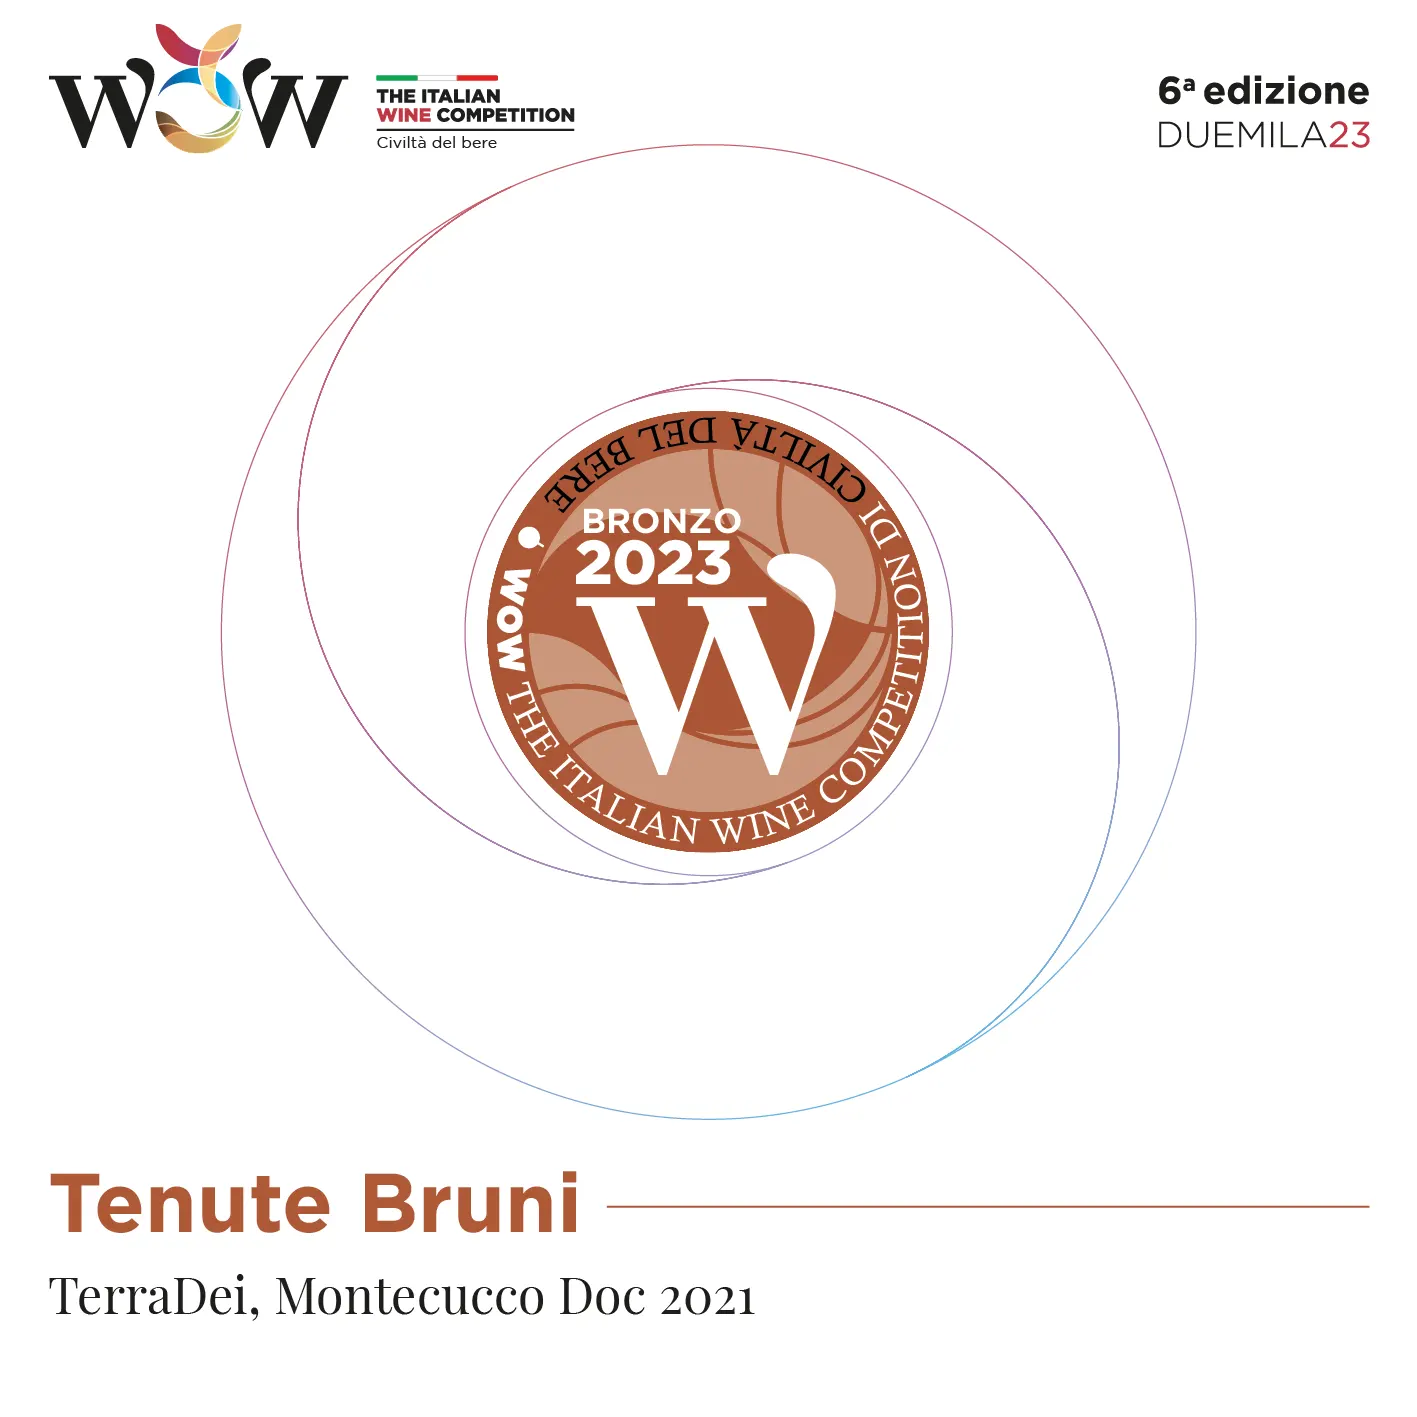 Wow! The Italian Wine Competition 2023 premiato il Terradei, Montecucco Doc